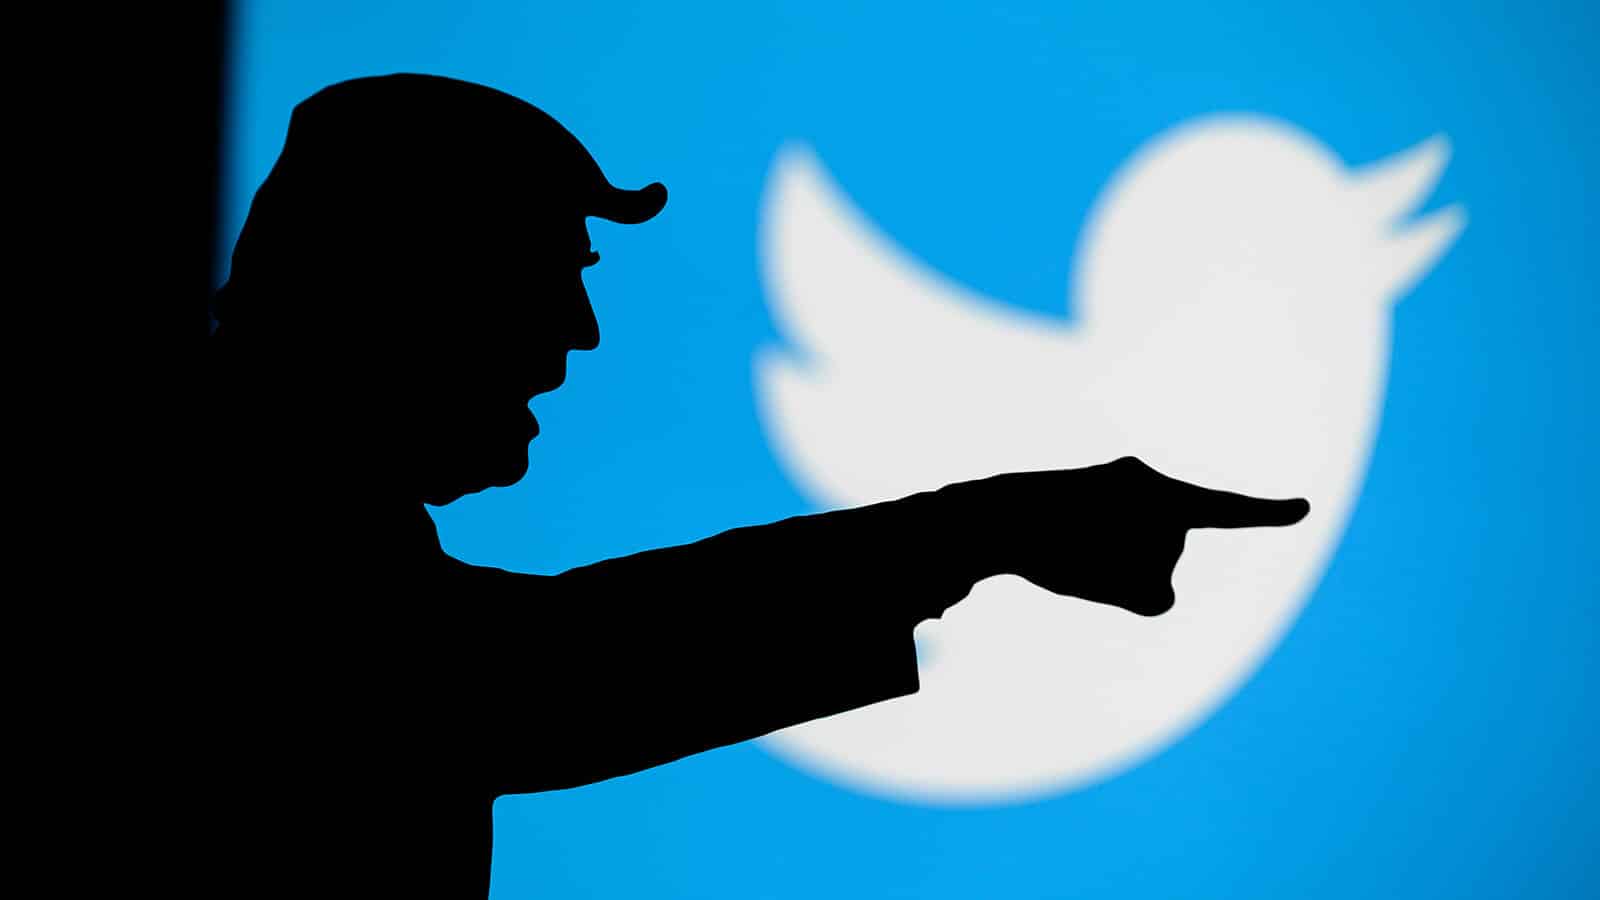 Silhouette von Trump bei Twitter Logo - Wird er bald gesperrt?